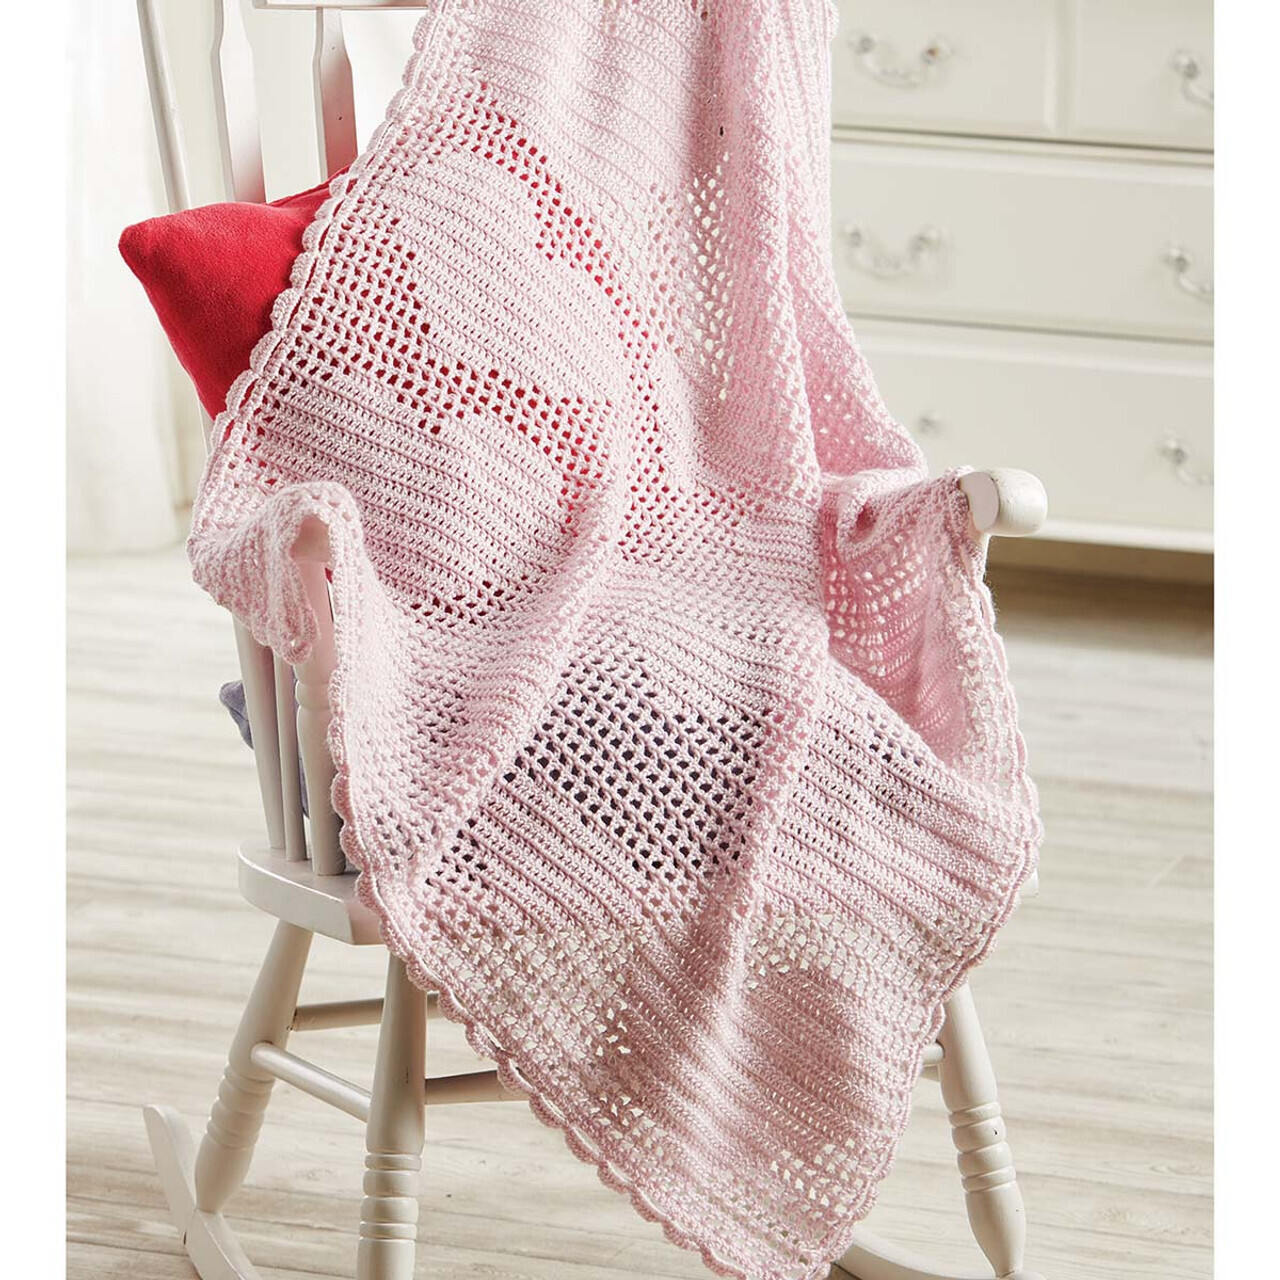 Sweetheart Baby Blanket Crochet Kit 